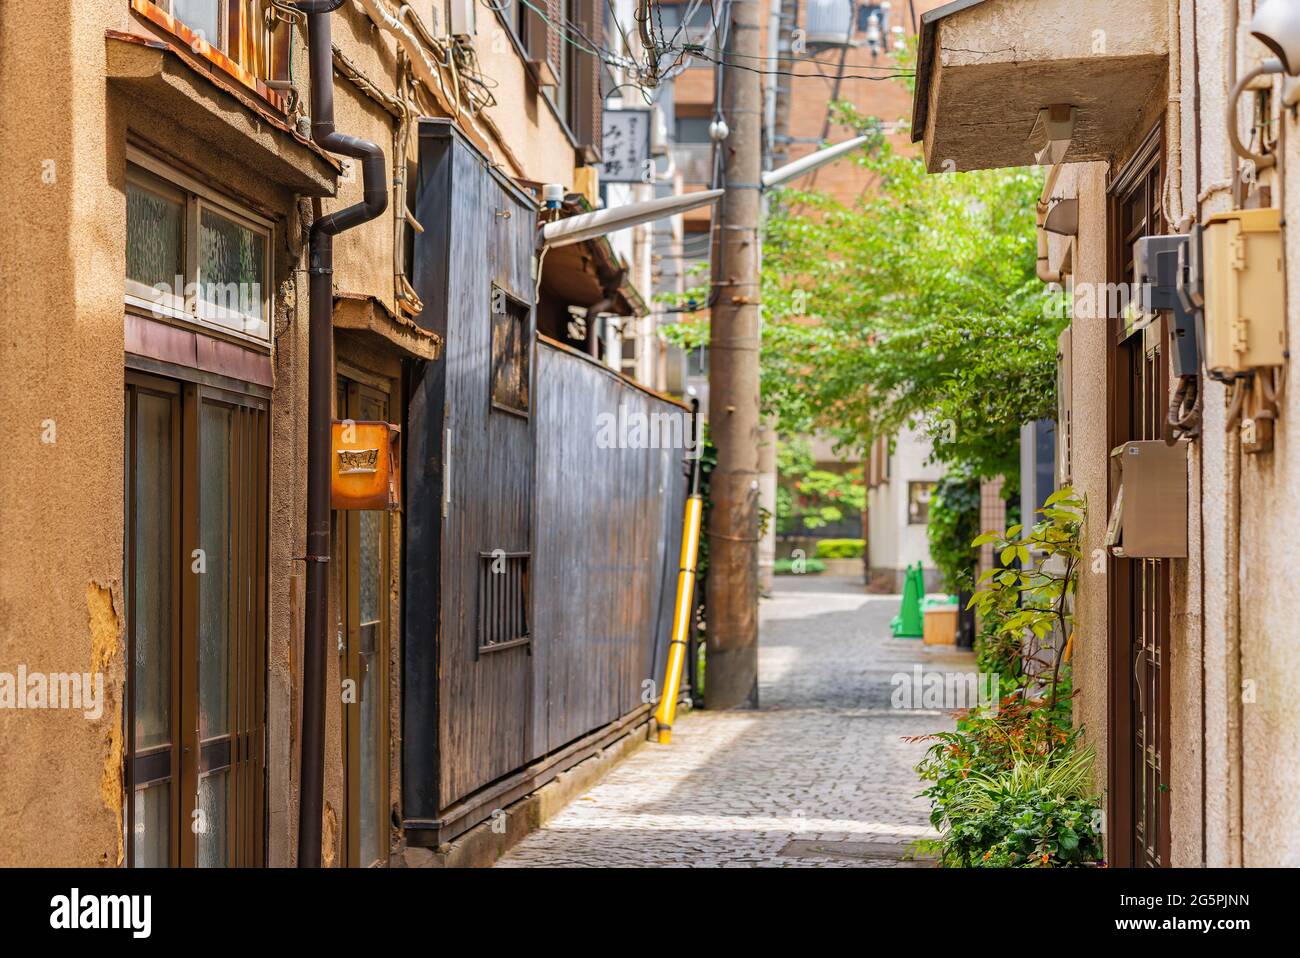 tokio, japón - 25 2021 de junio: Antiguas fachadas de madera y estuco de yeso de Kakurenbo yokocho que significa ocultar y buscar callejón en la antigua roja-luz dis Foto de stock